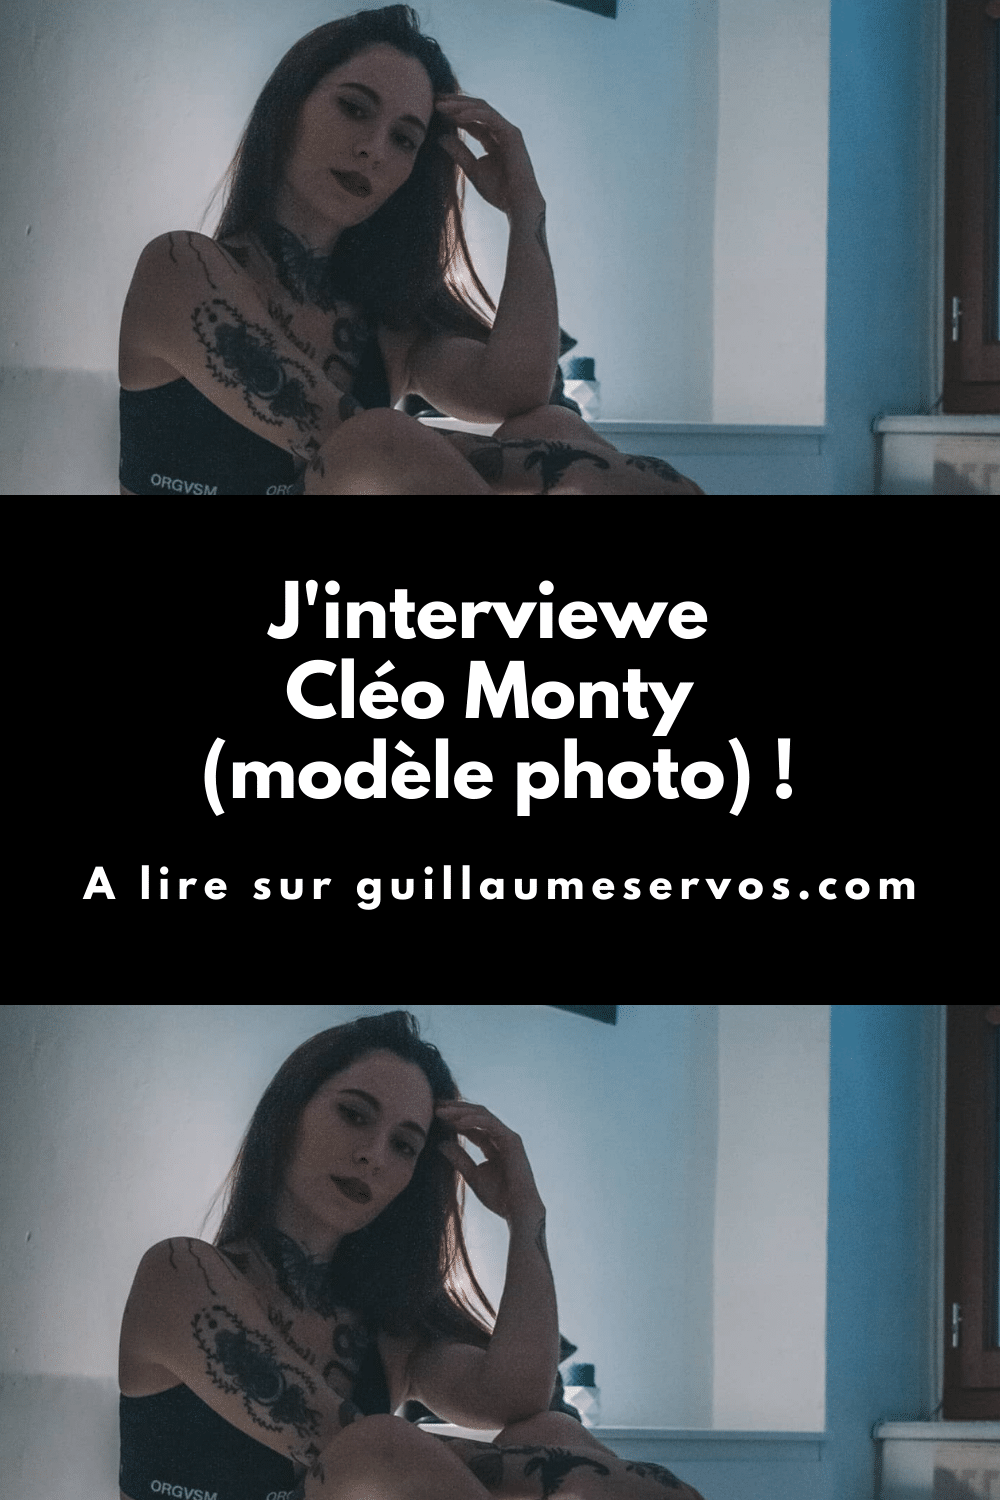 Découvre mon interview avec Cléo Monty, modèle photo expérimentée dans le boudoir. Son rapport à la photographie, aux réseaux sociaux et au voyage.